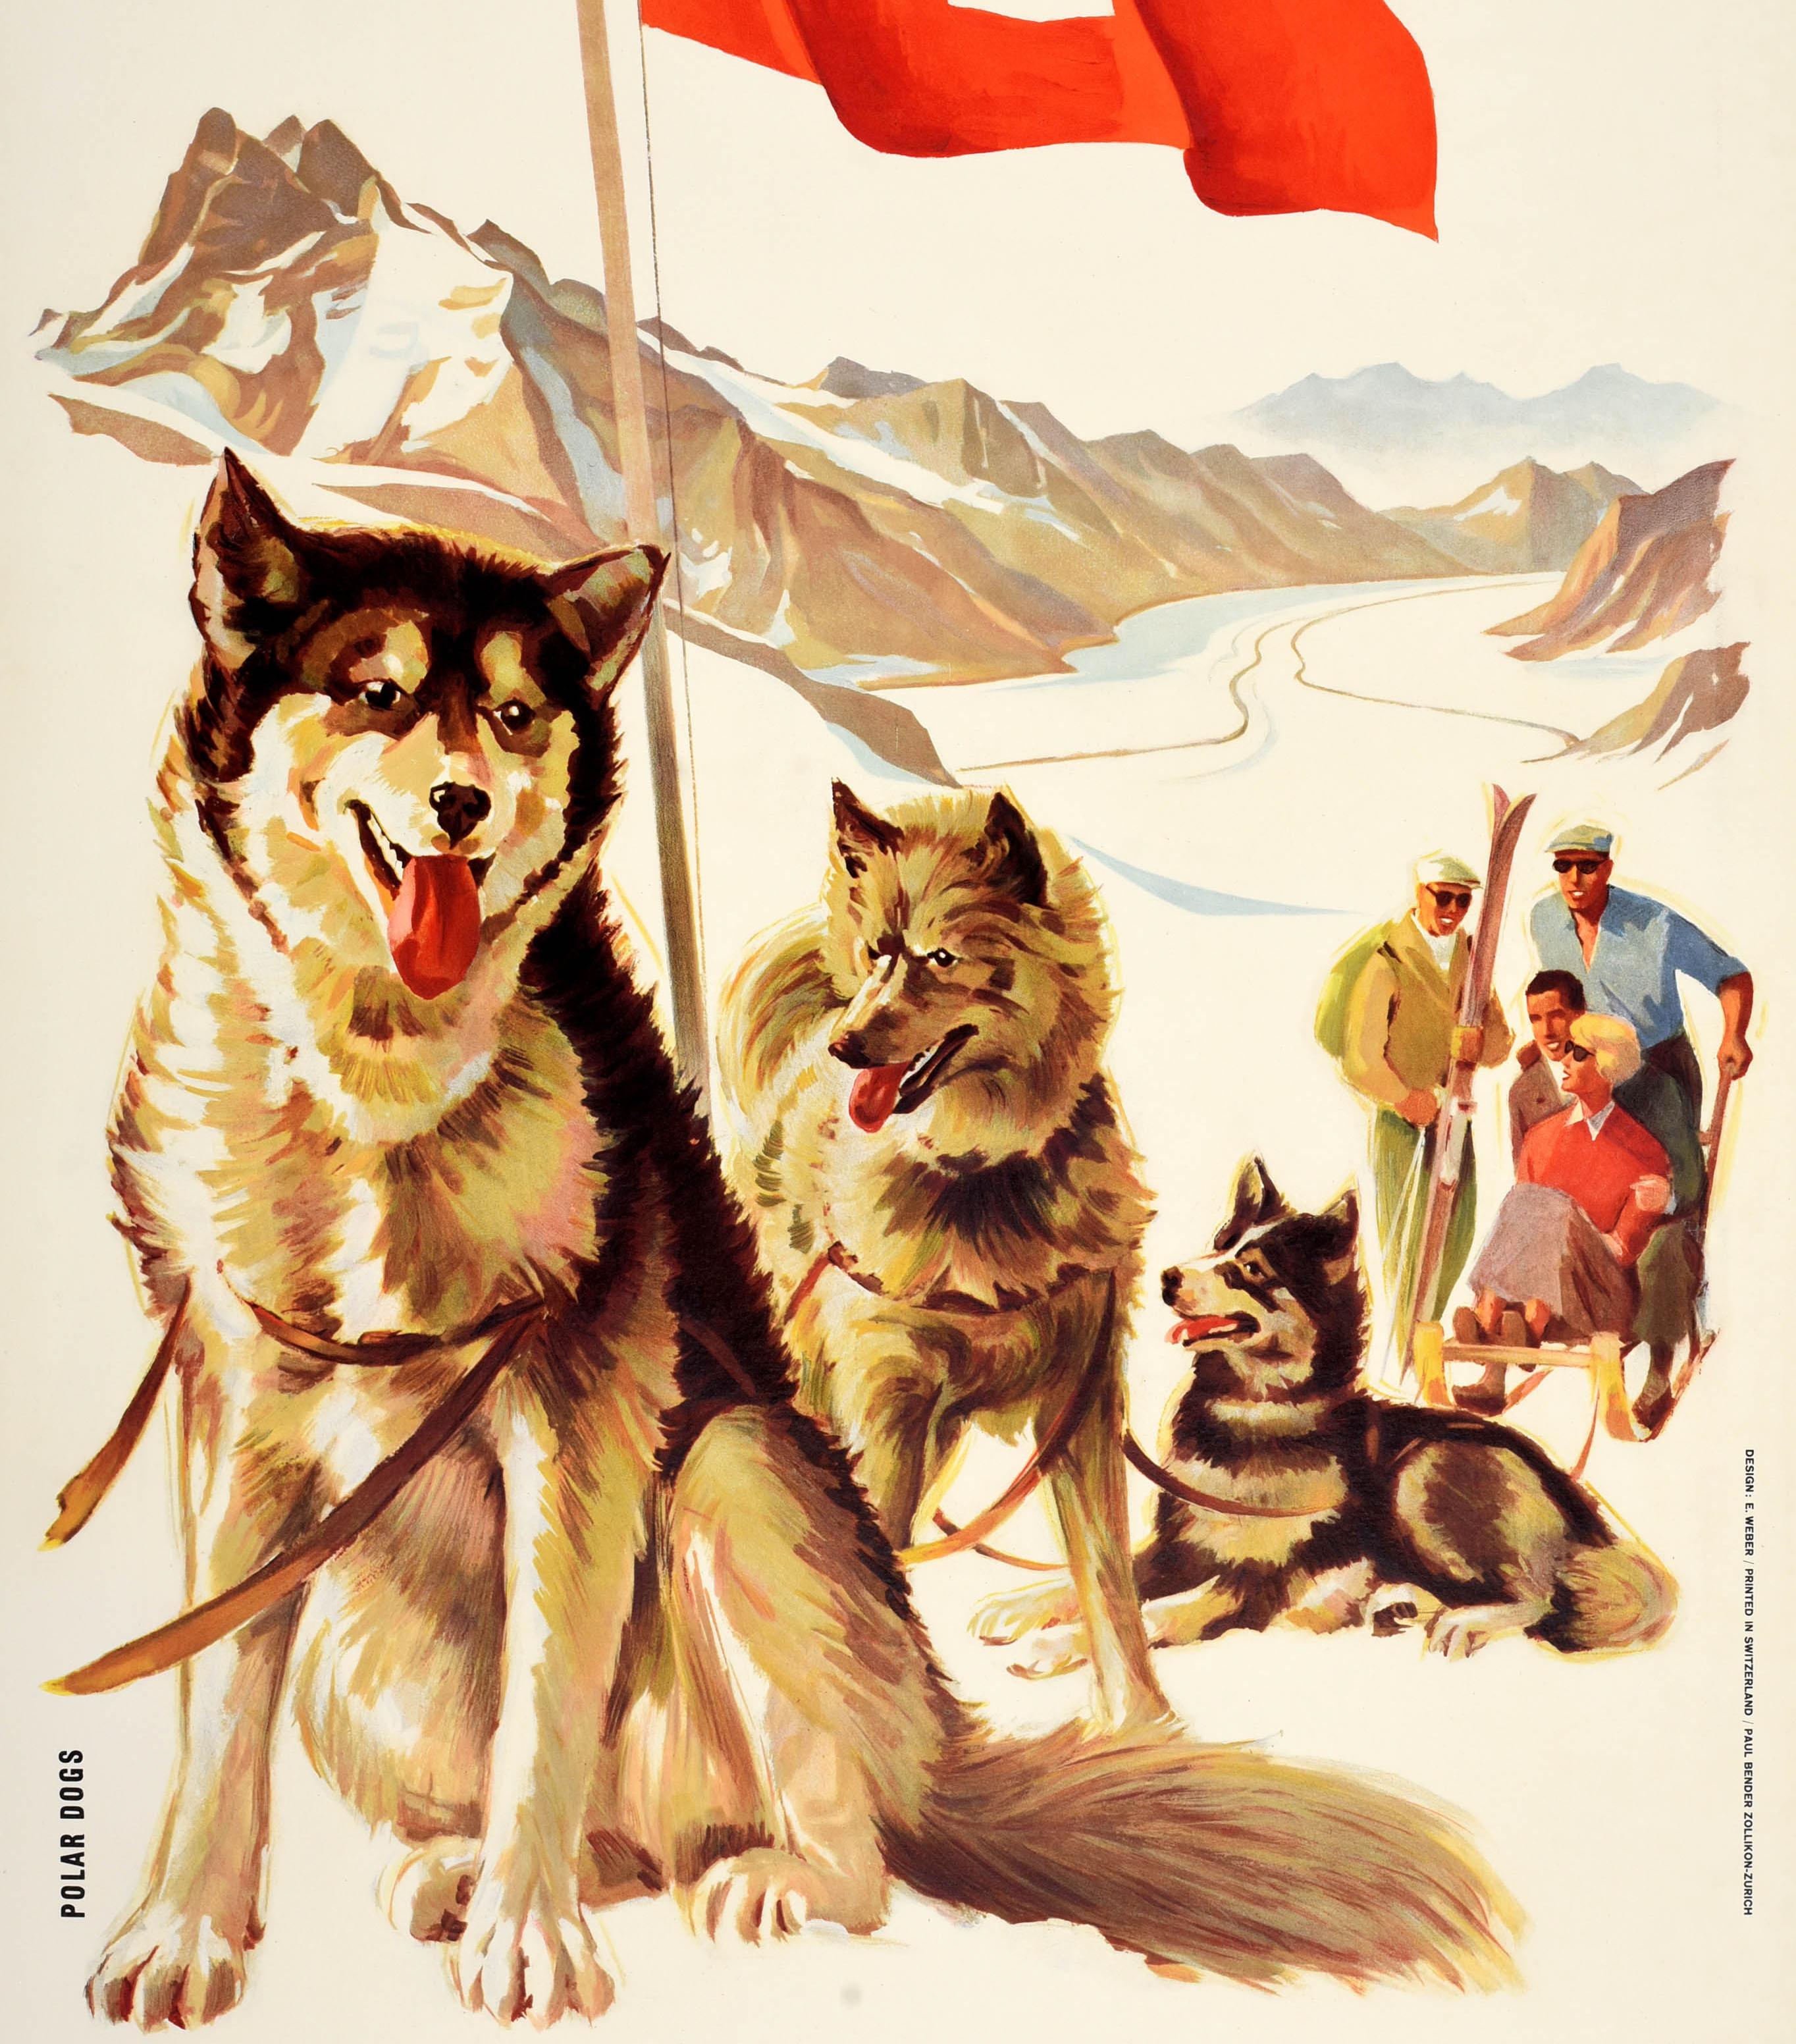 Original Vintage Wintersport und Skifahren Reiseplakat - Berner Oberland Schweiz Jungfraujoch Jungfraubahn - große Kunstwerk mit dem Titel Polar Dogs mit Schlittenhunden vorgespannt mit einer Dame und Mann sitzen auf dem Schlitten der Vorbereitung